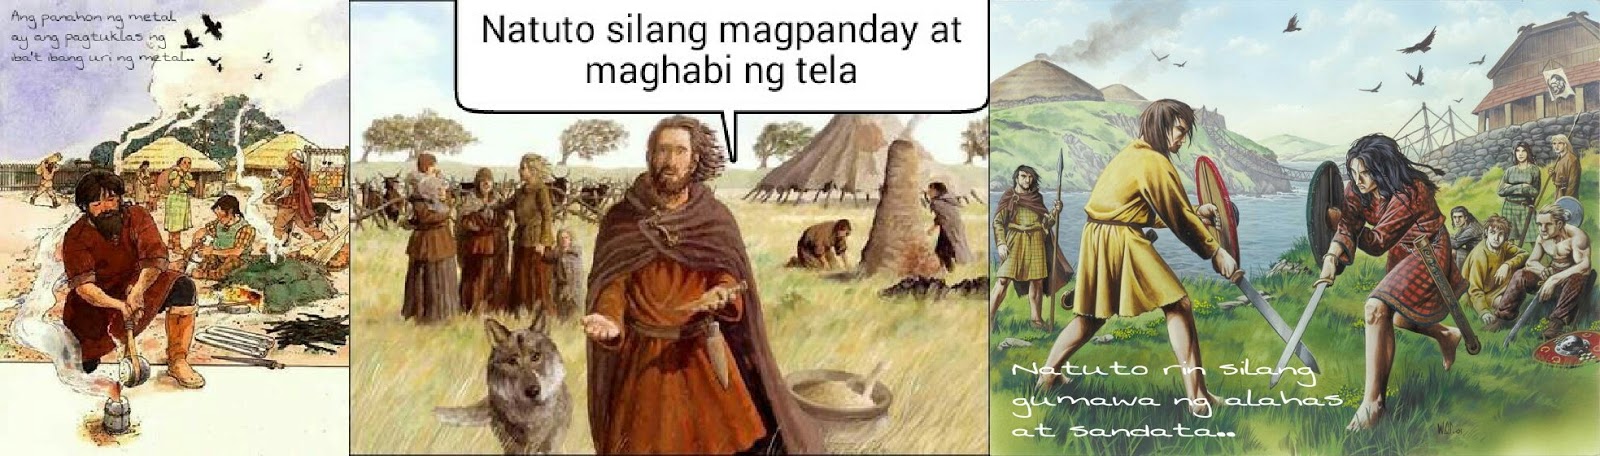 panahon ng mesolitiko - philippin news collections